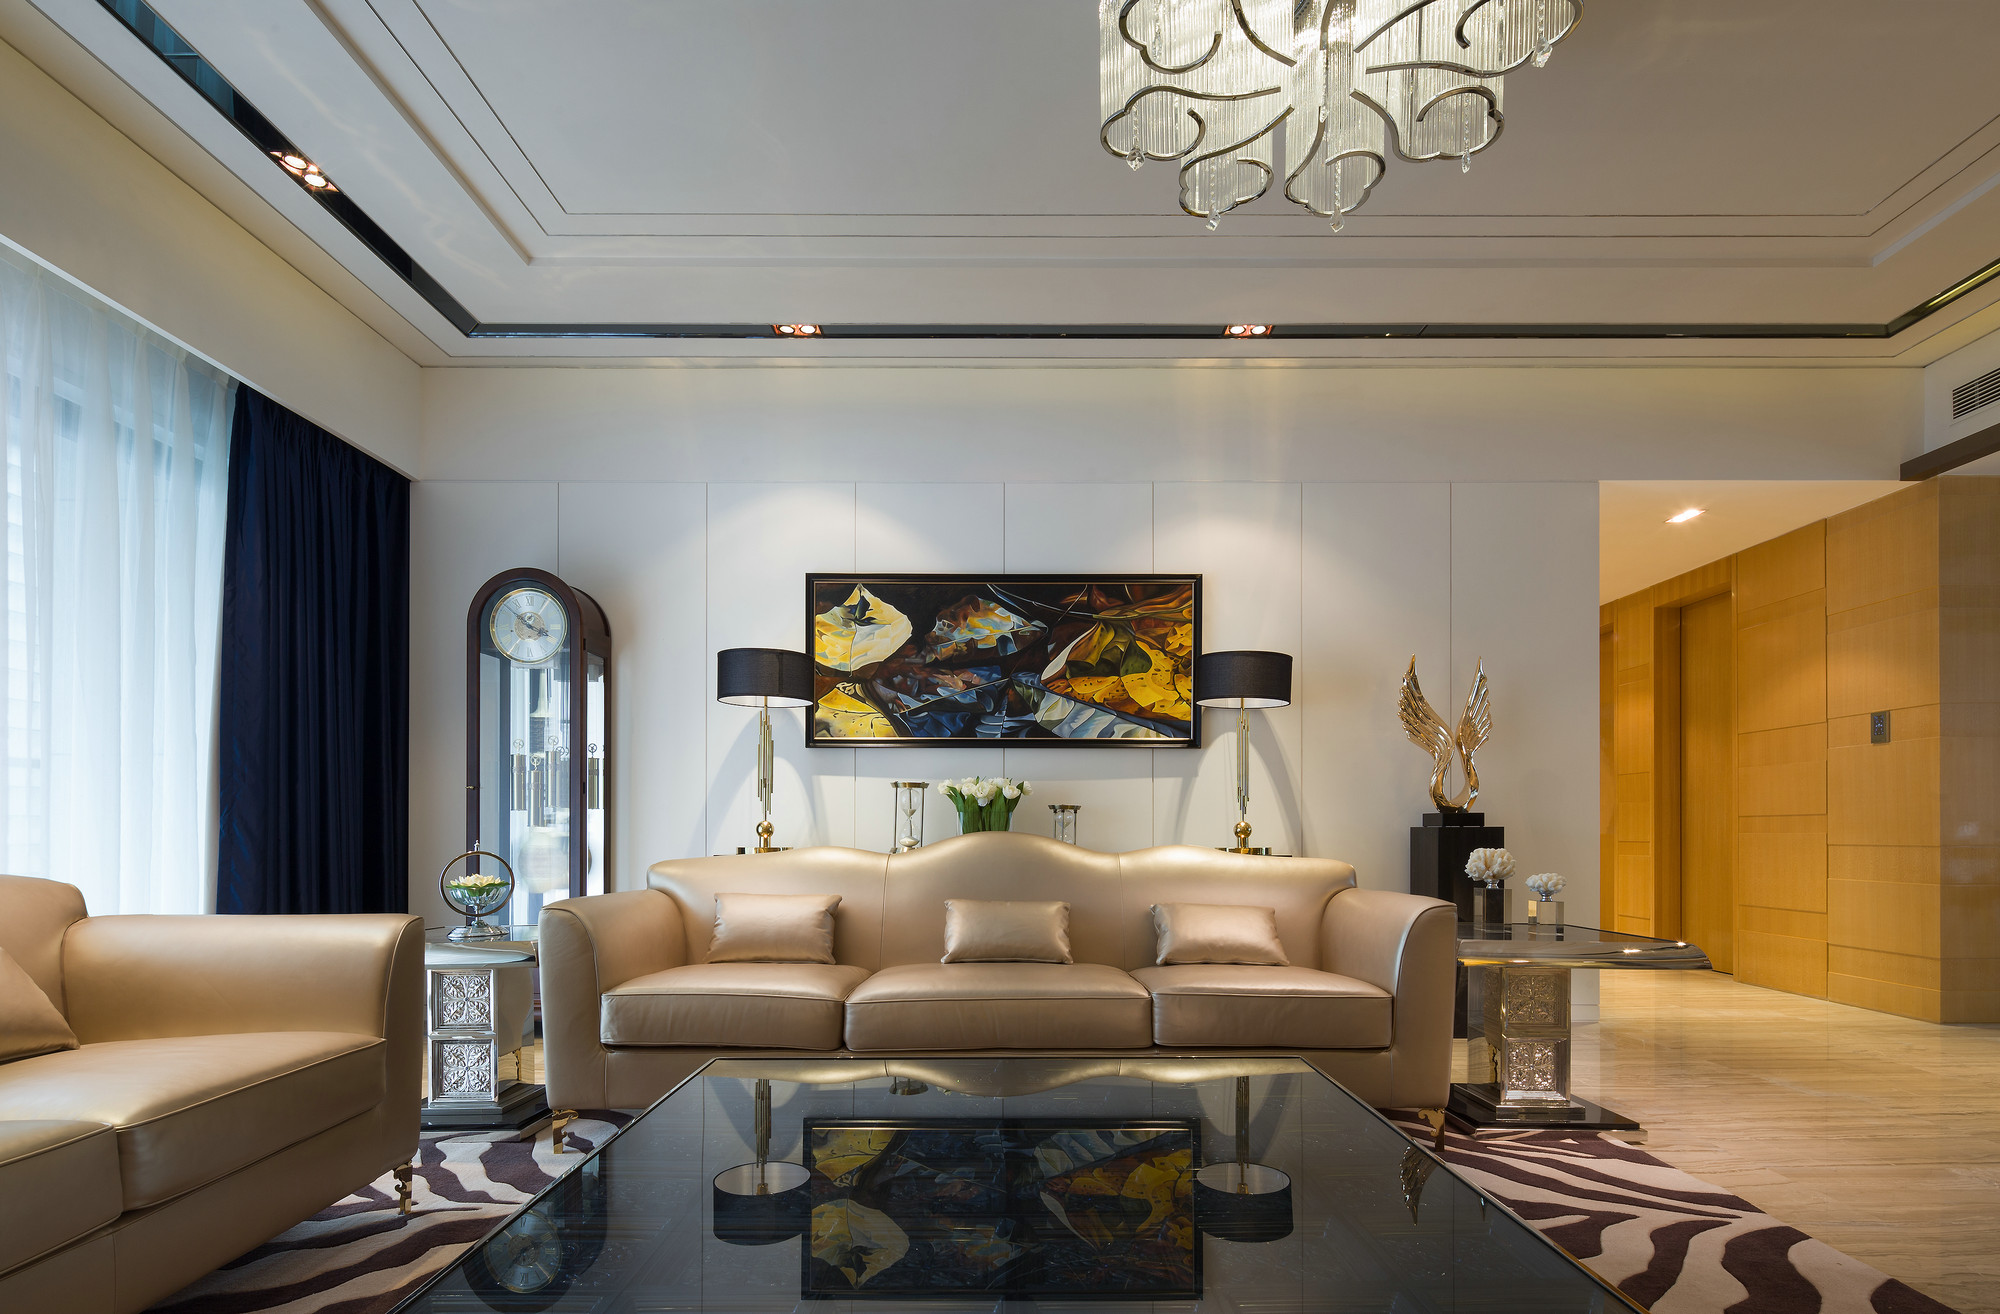 客厅白色背景墙搭配香槟色皮质沙发，营造出奢雅、素净的空间氛围。